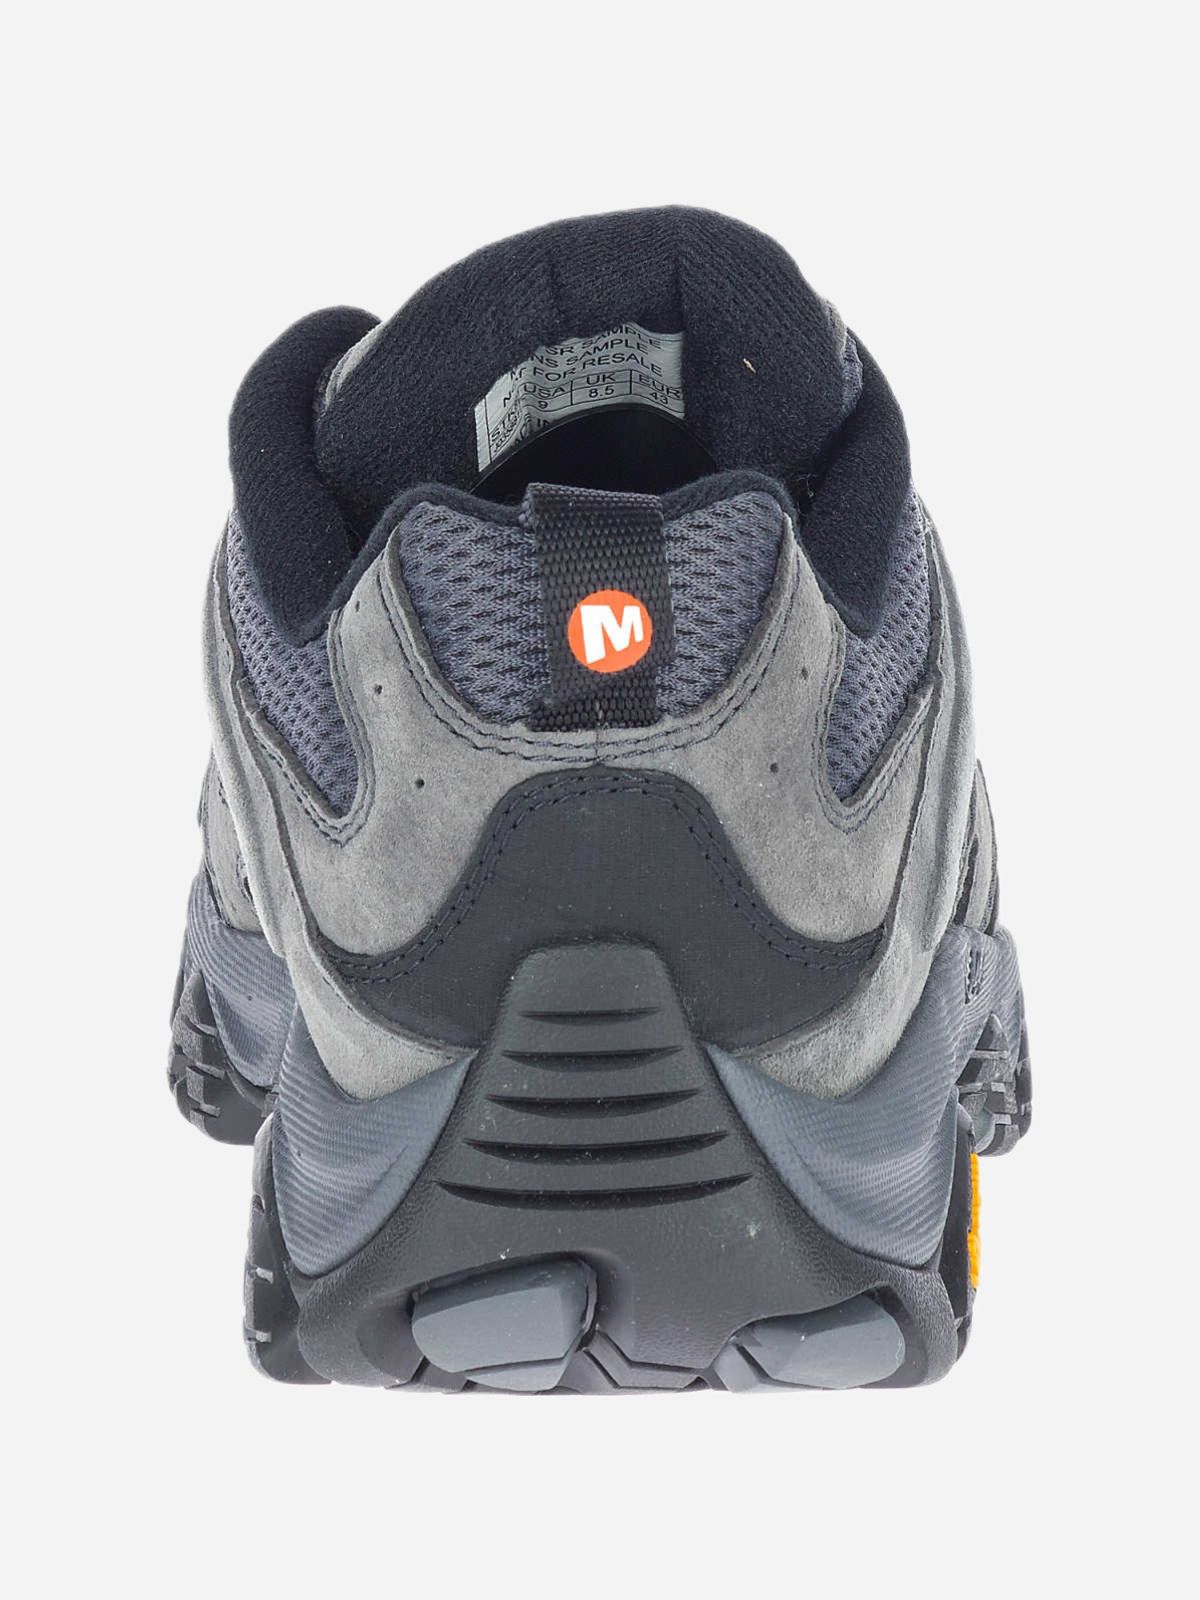  נעלי Moab 3 / גברים של MERRELL